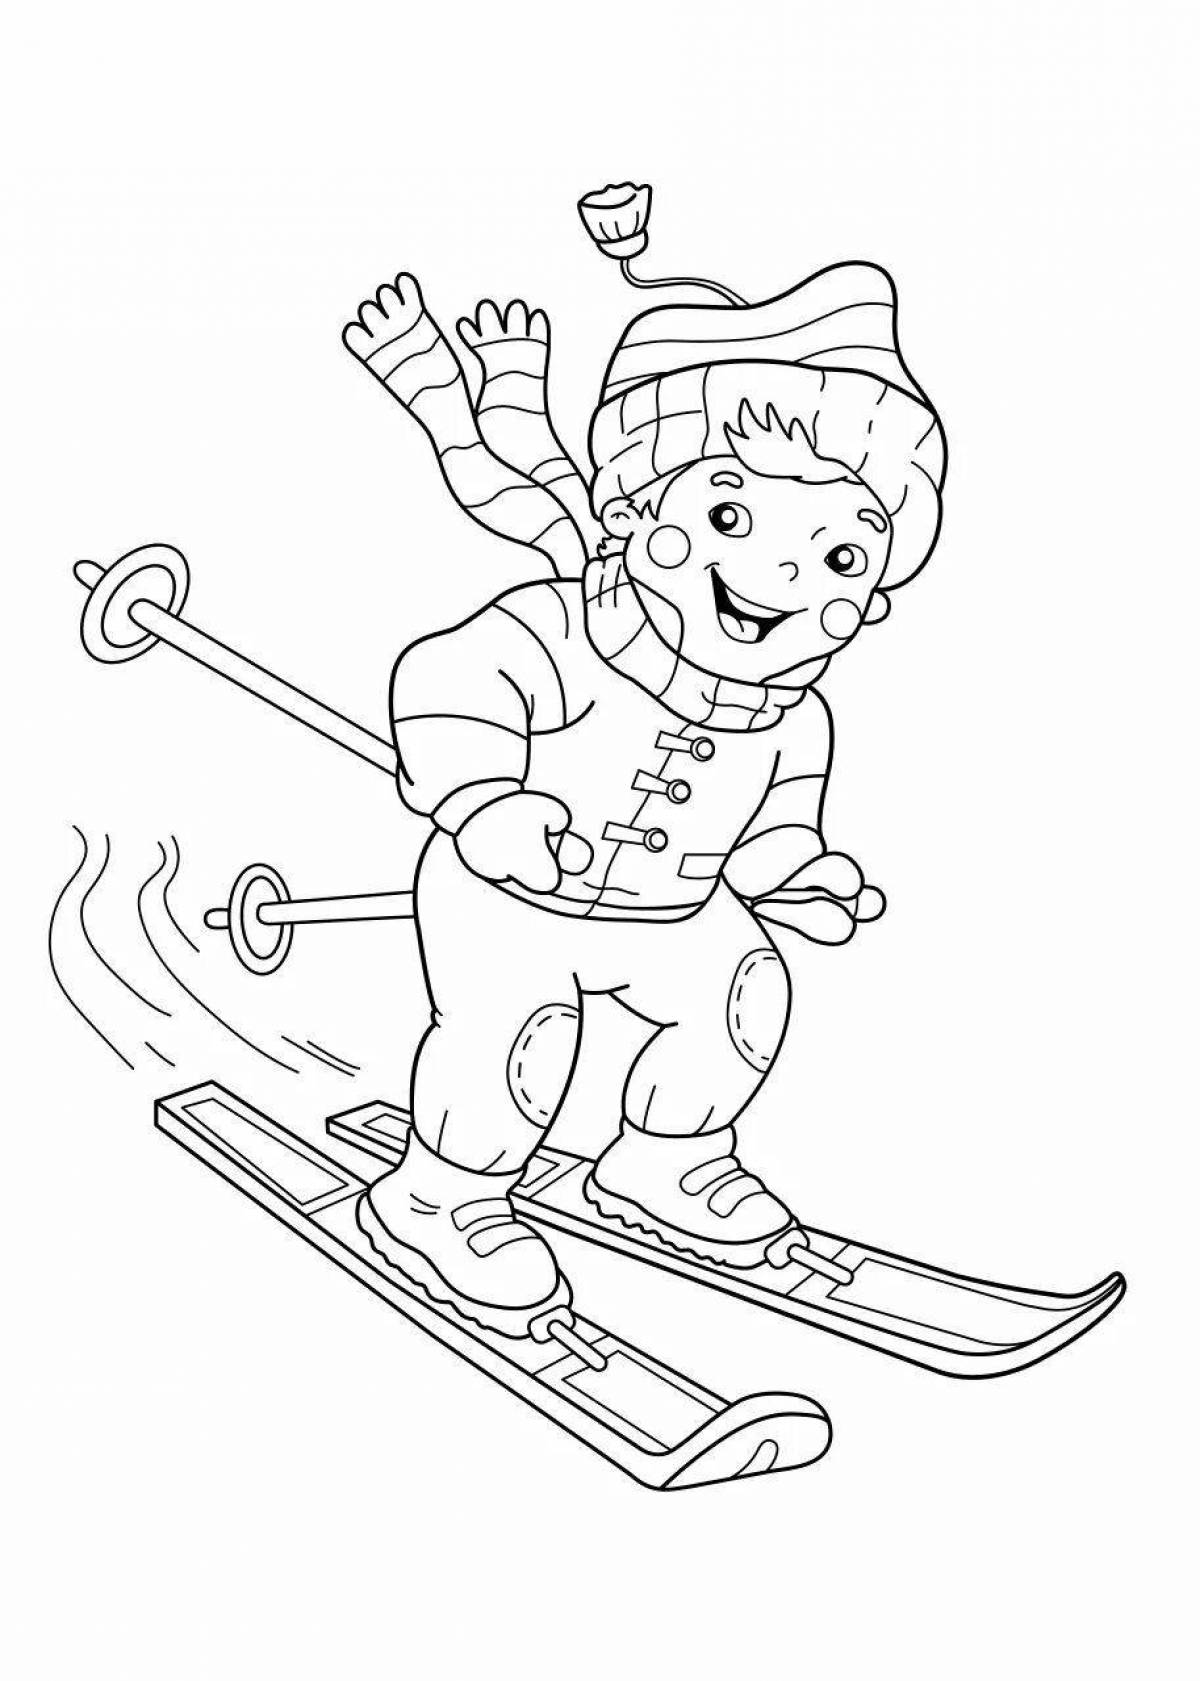 Playful man skiing